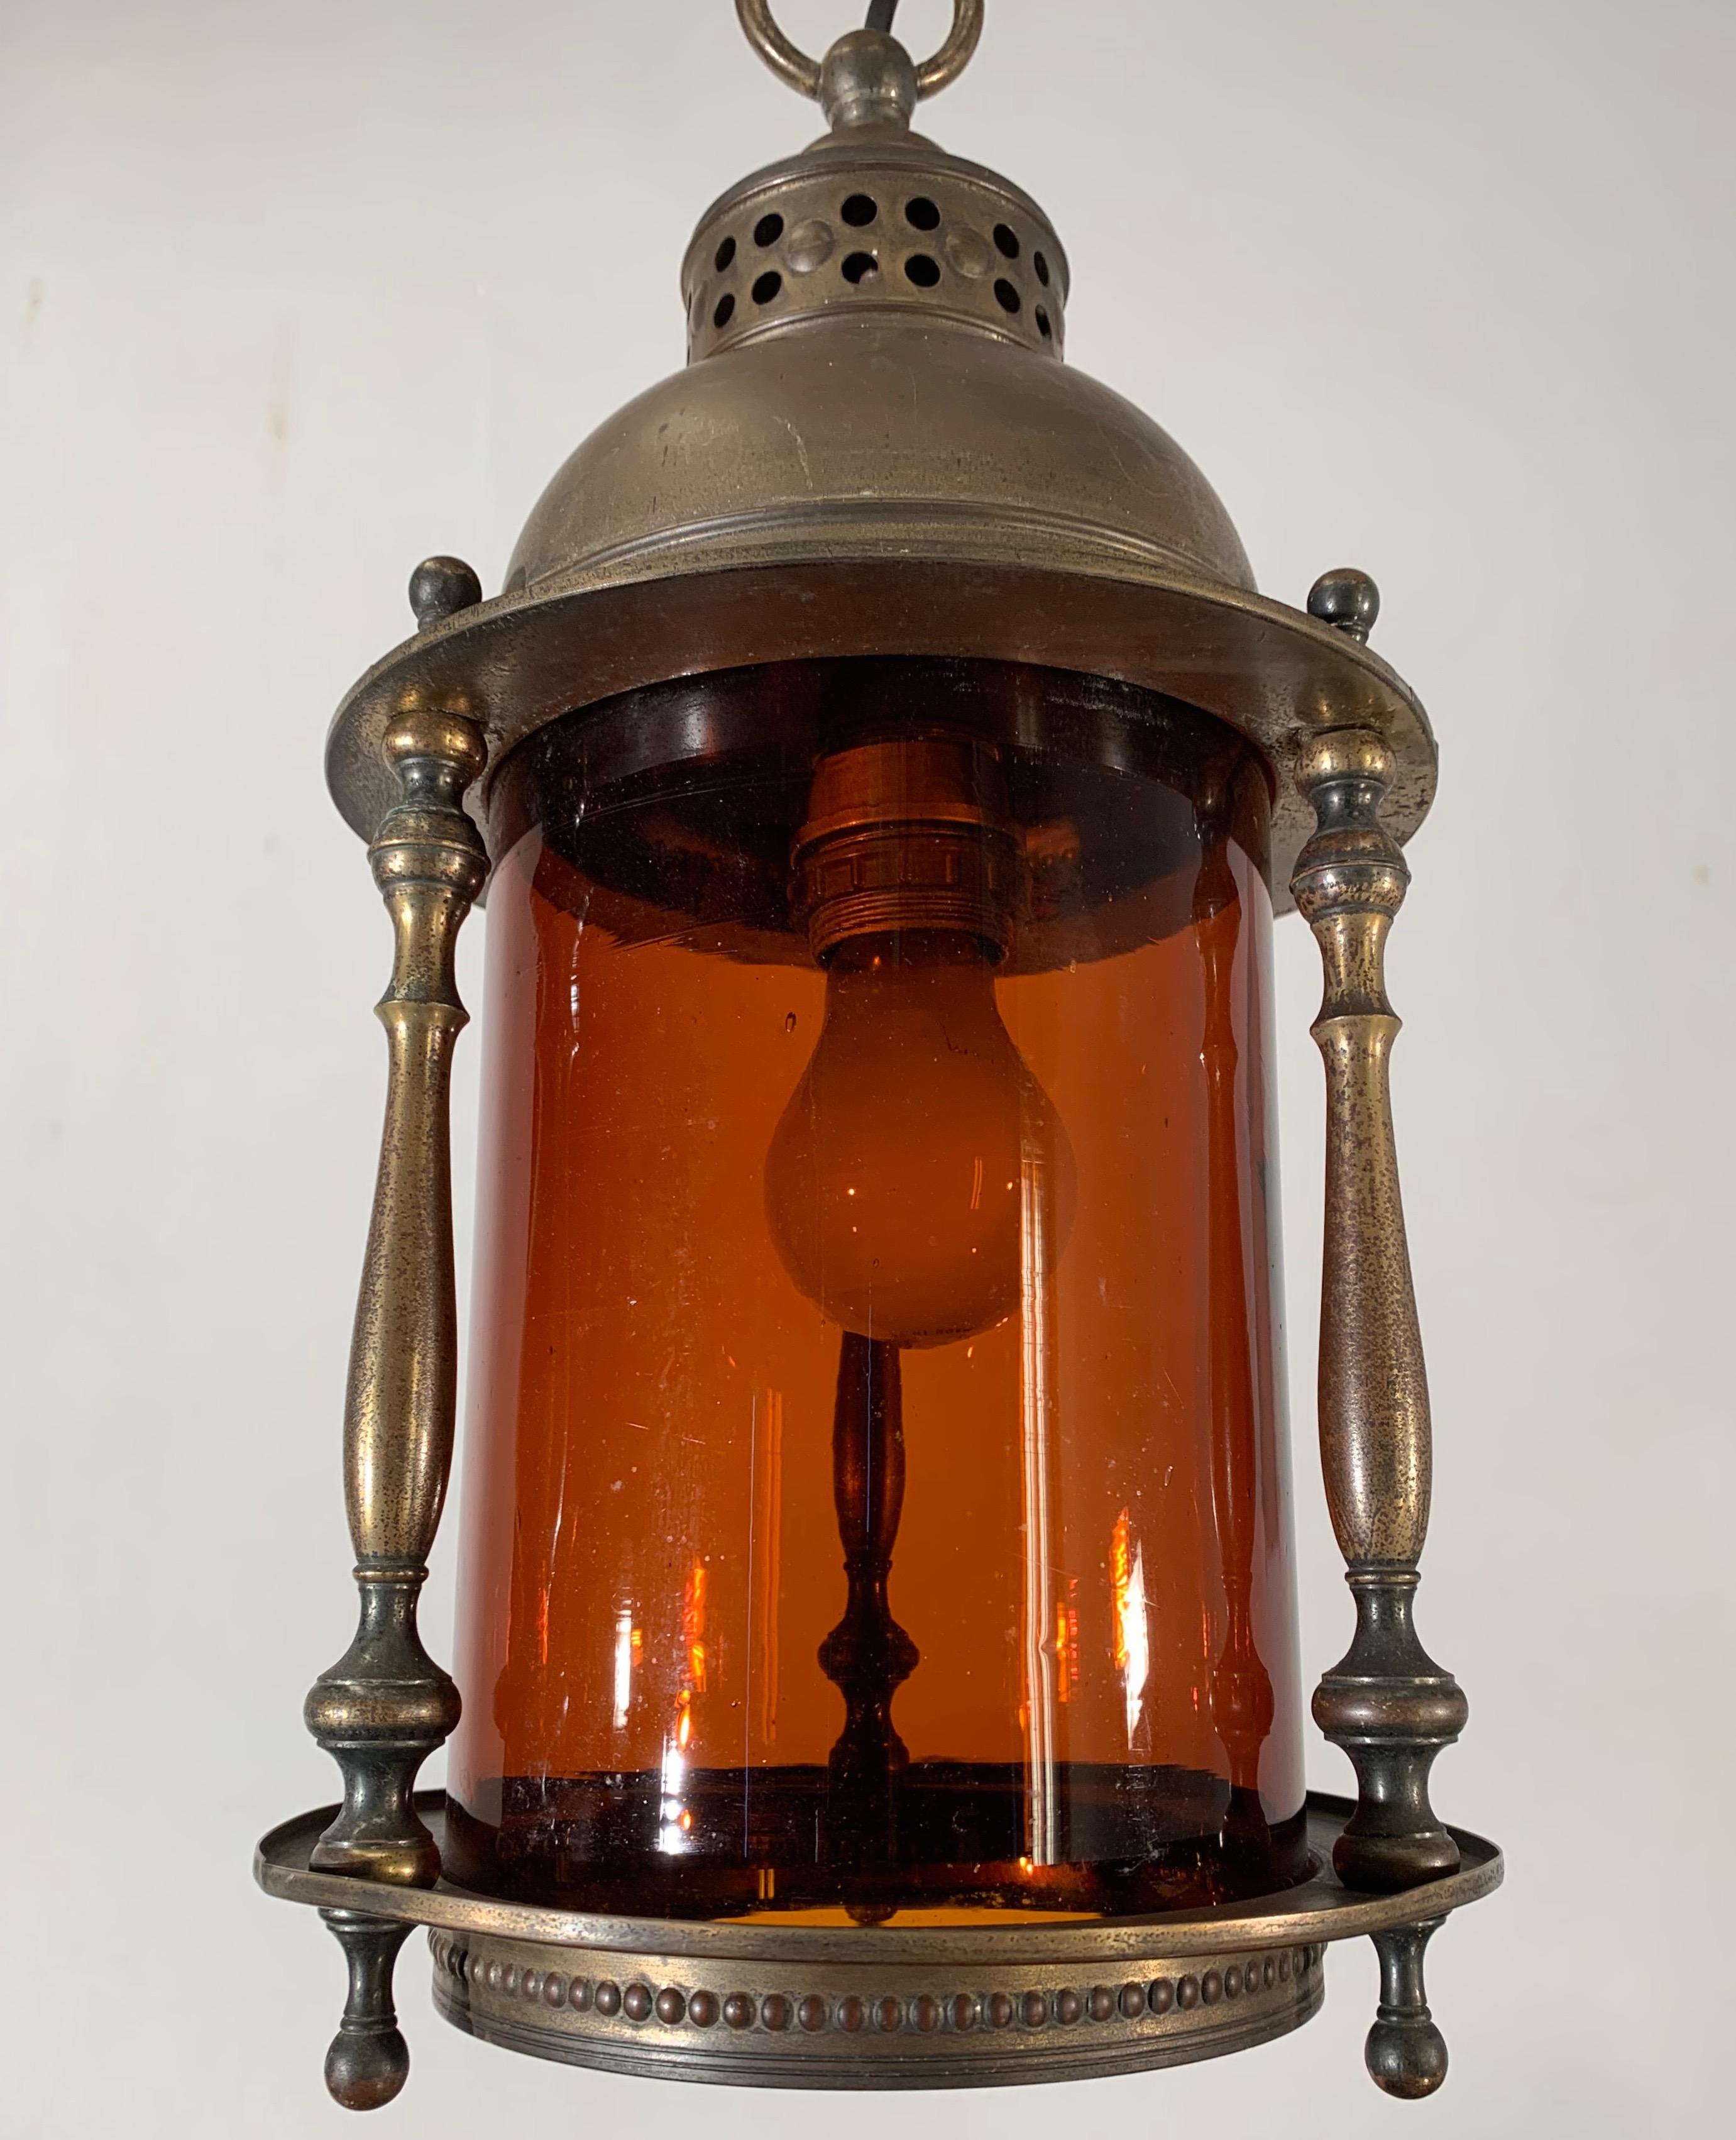 Seltene von Schiffslaternen inspirierte Leuchte mit originalem Rundglas

Wenn Sie auf der Suche nach einer stilvollen Arts & Crafts-Hängeleuchte sind, um eine warme Atmosphäre in Ihrem Eingangsbereich, in Ihrem Schlafzimmer, auf Ihrem Treppenabsatz